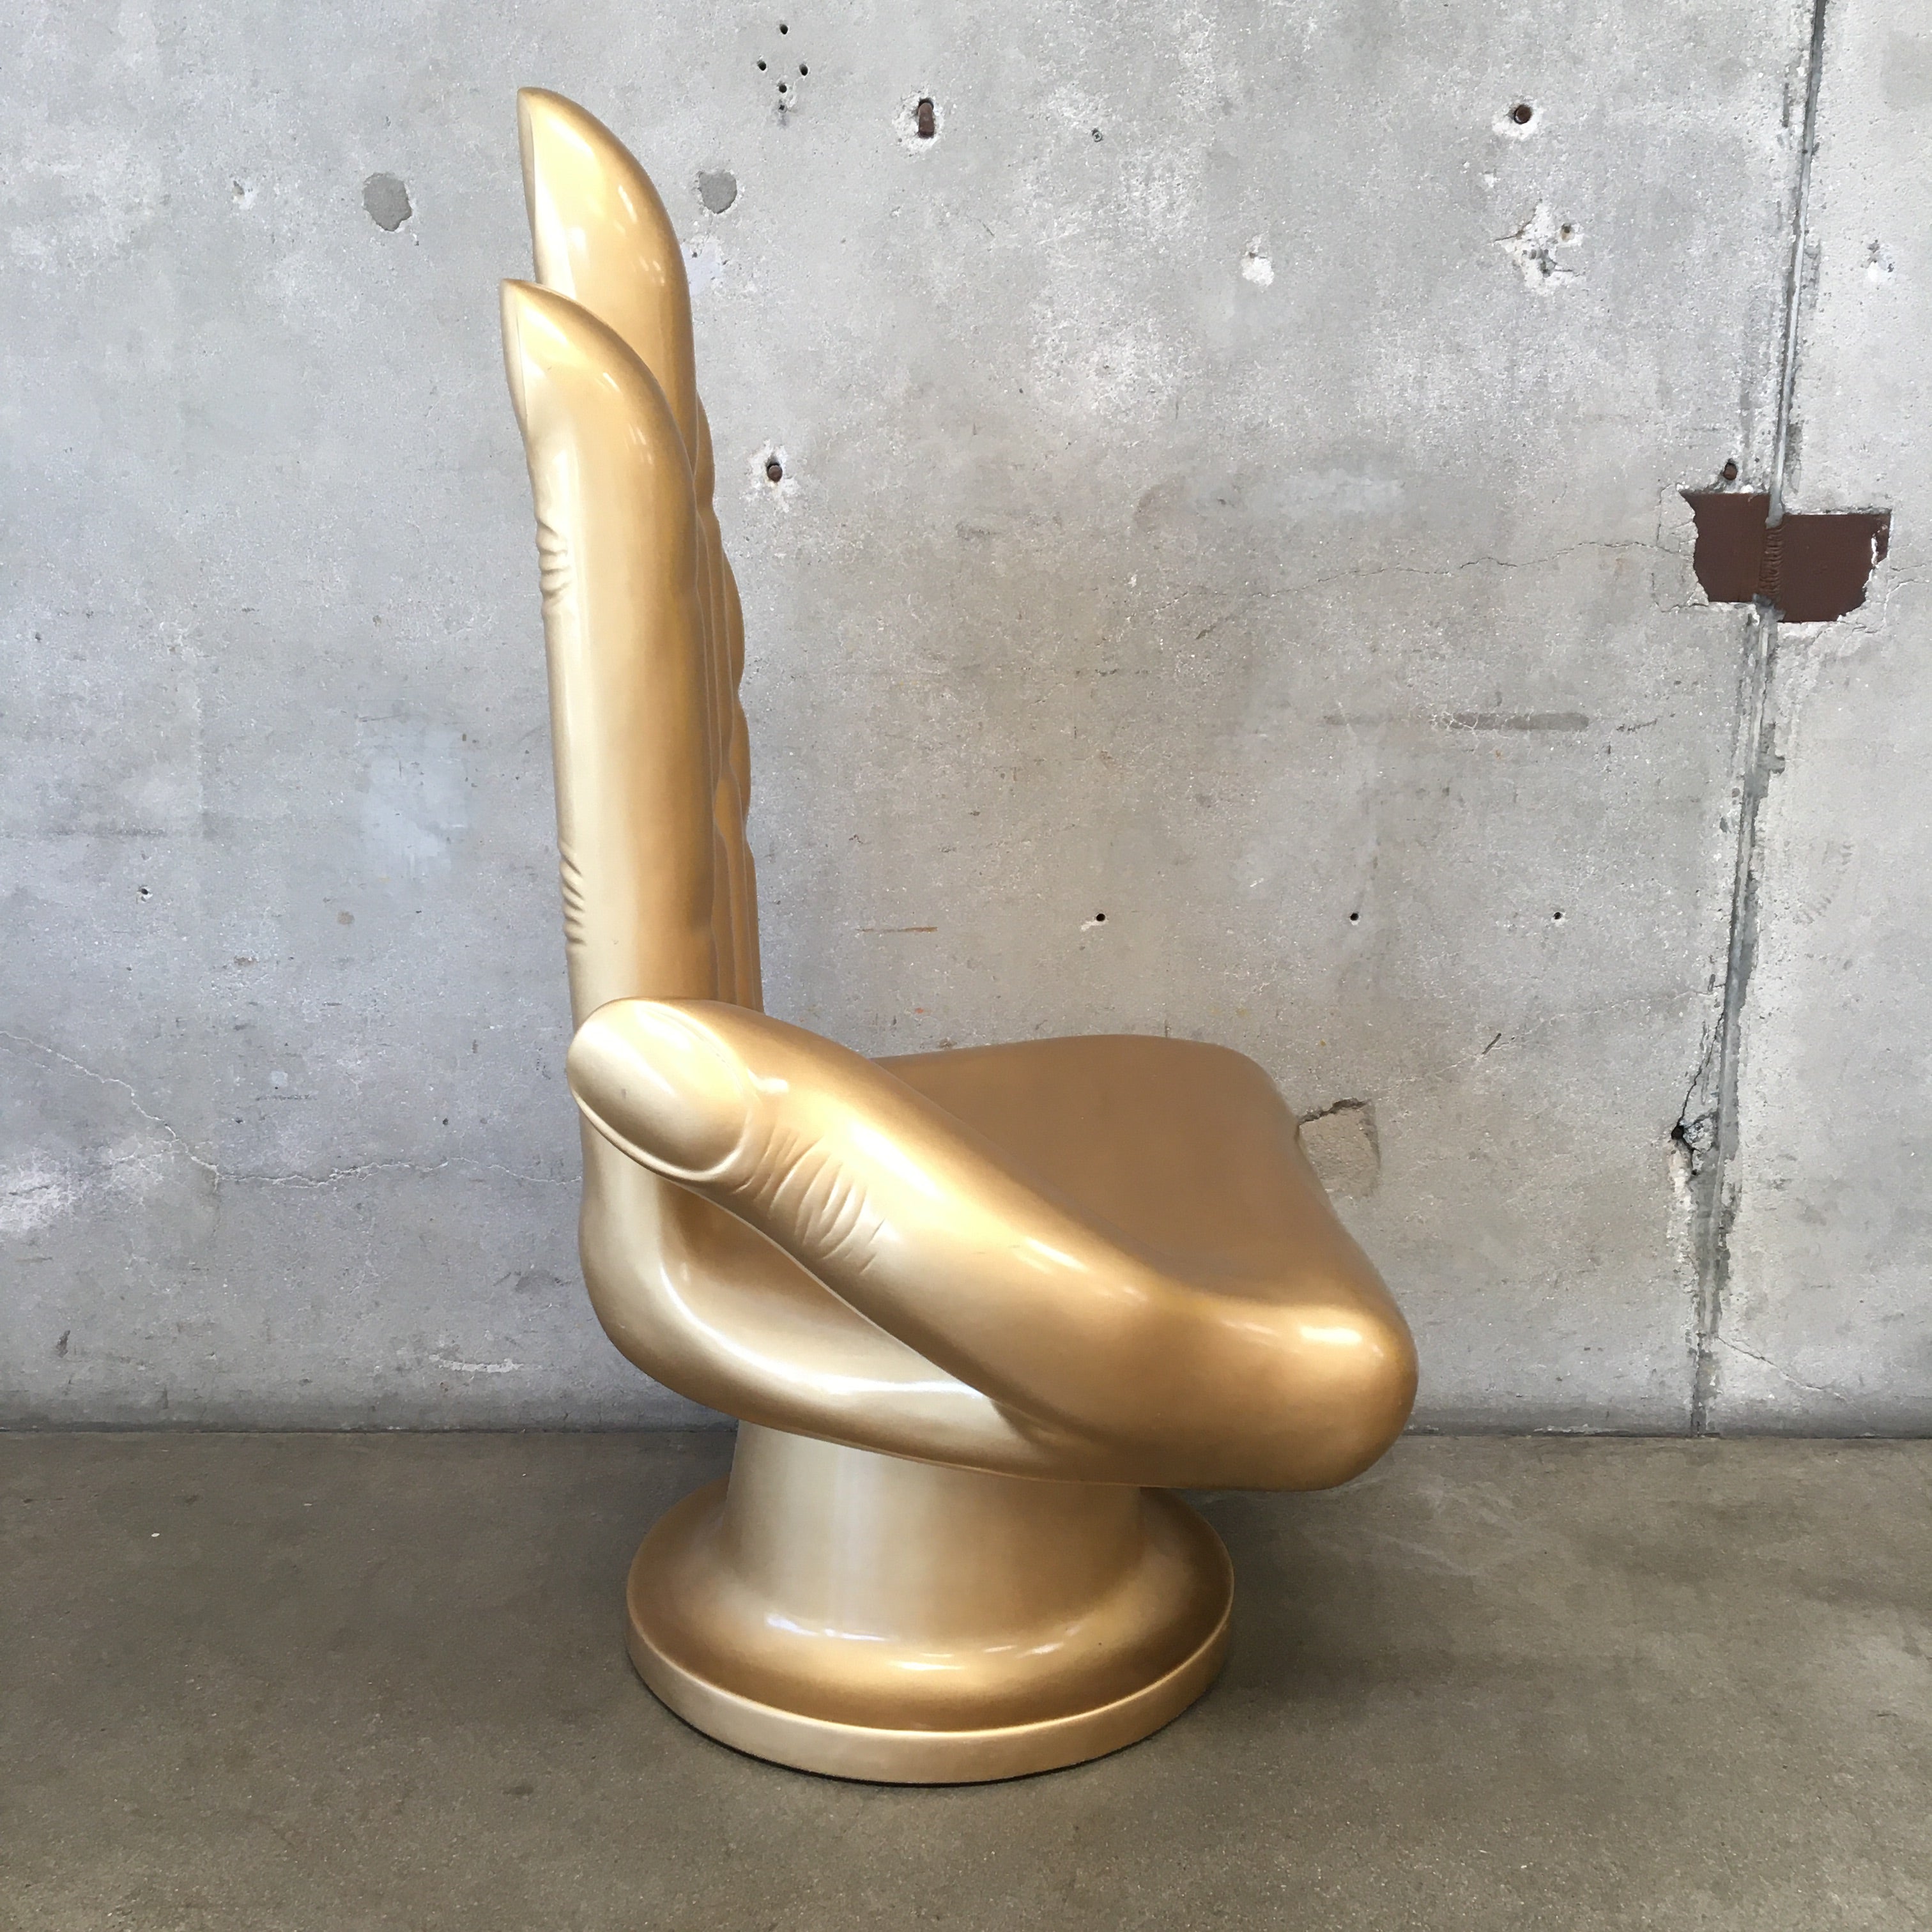 Vintage Fiber Glass Sculptural Hand Chair